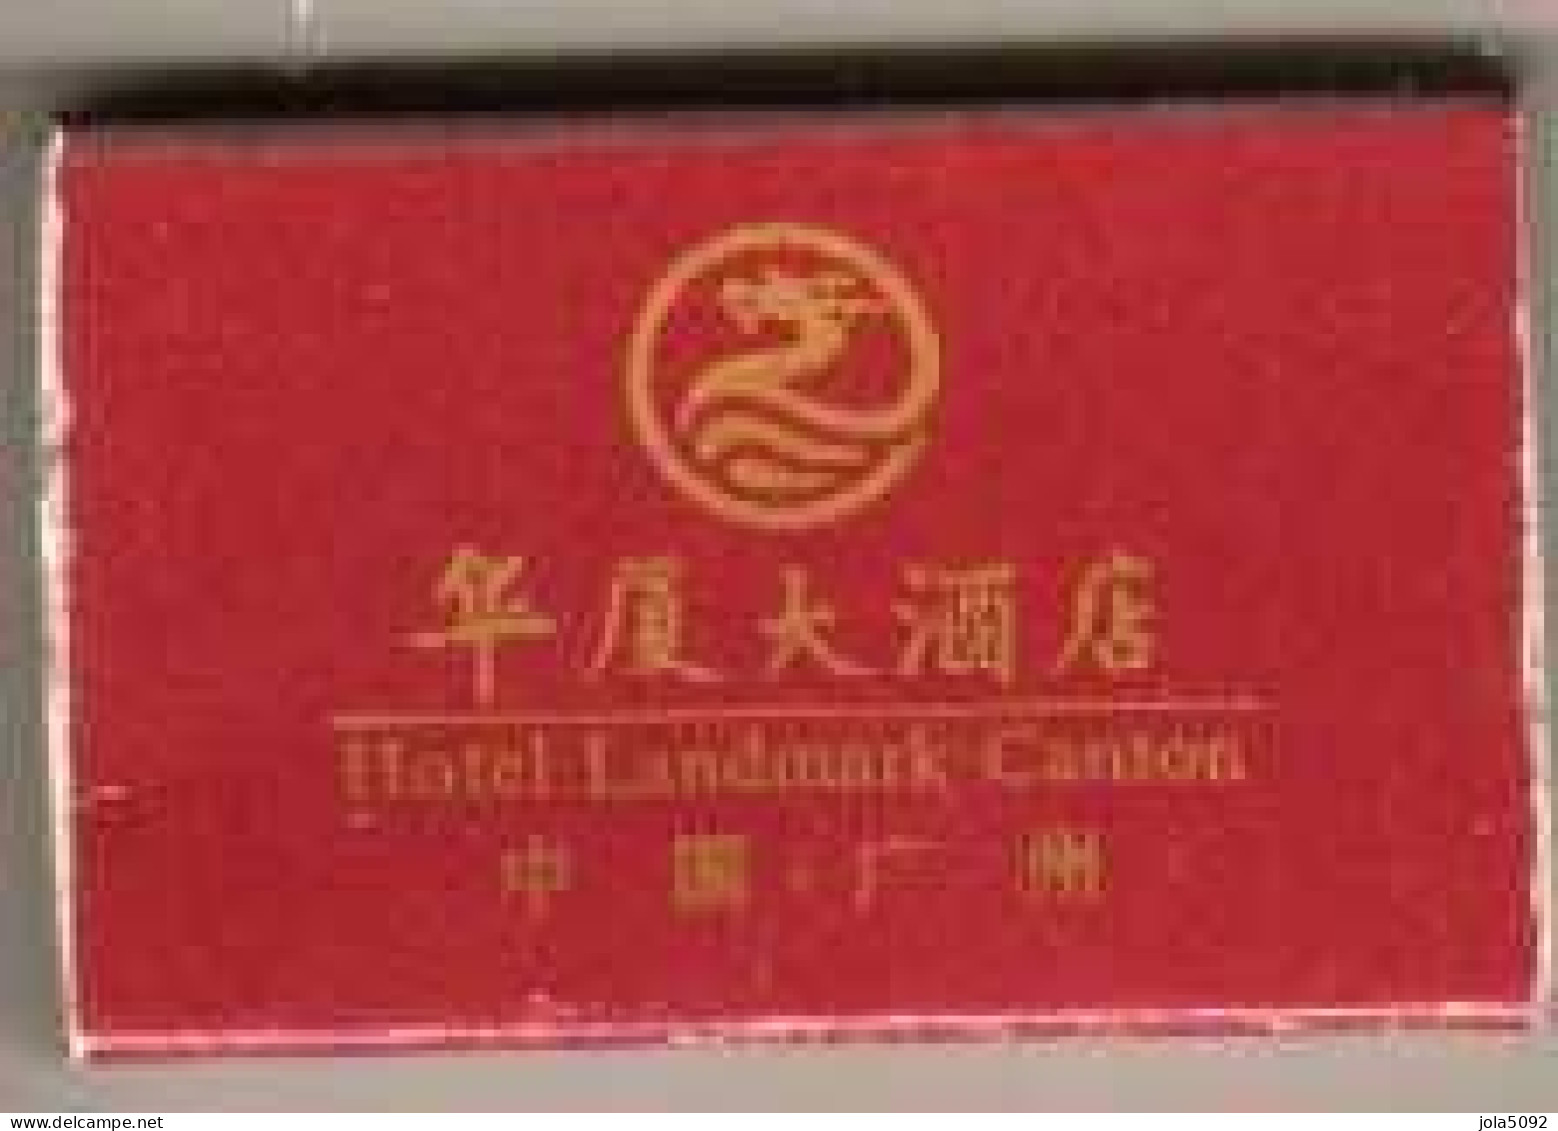 Boîte D'Allumettes - HOTEL LANDMARK - CANTON CHINE - Luciferdozen